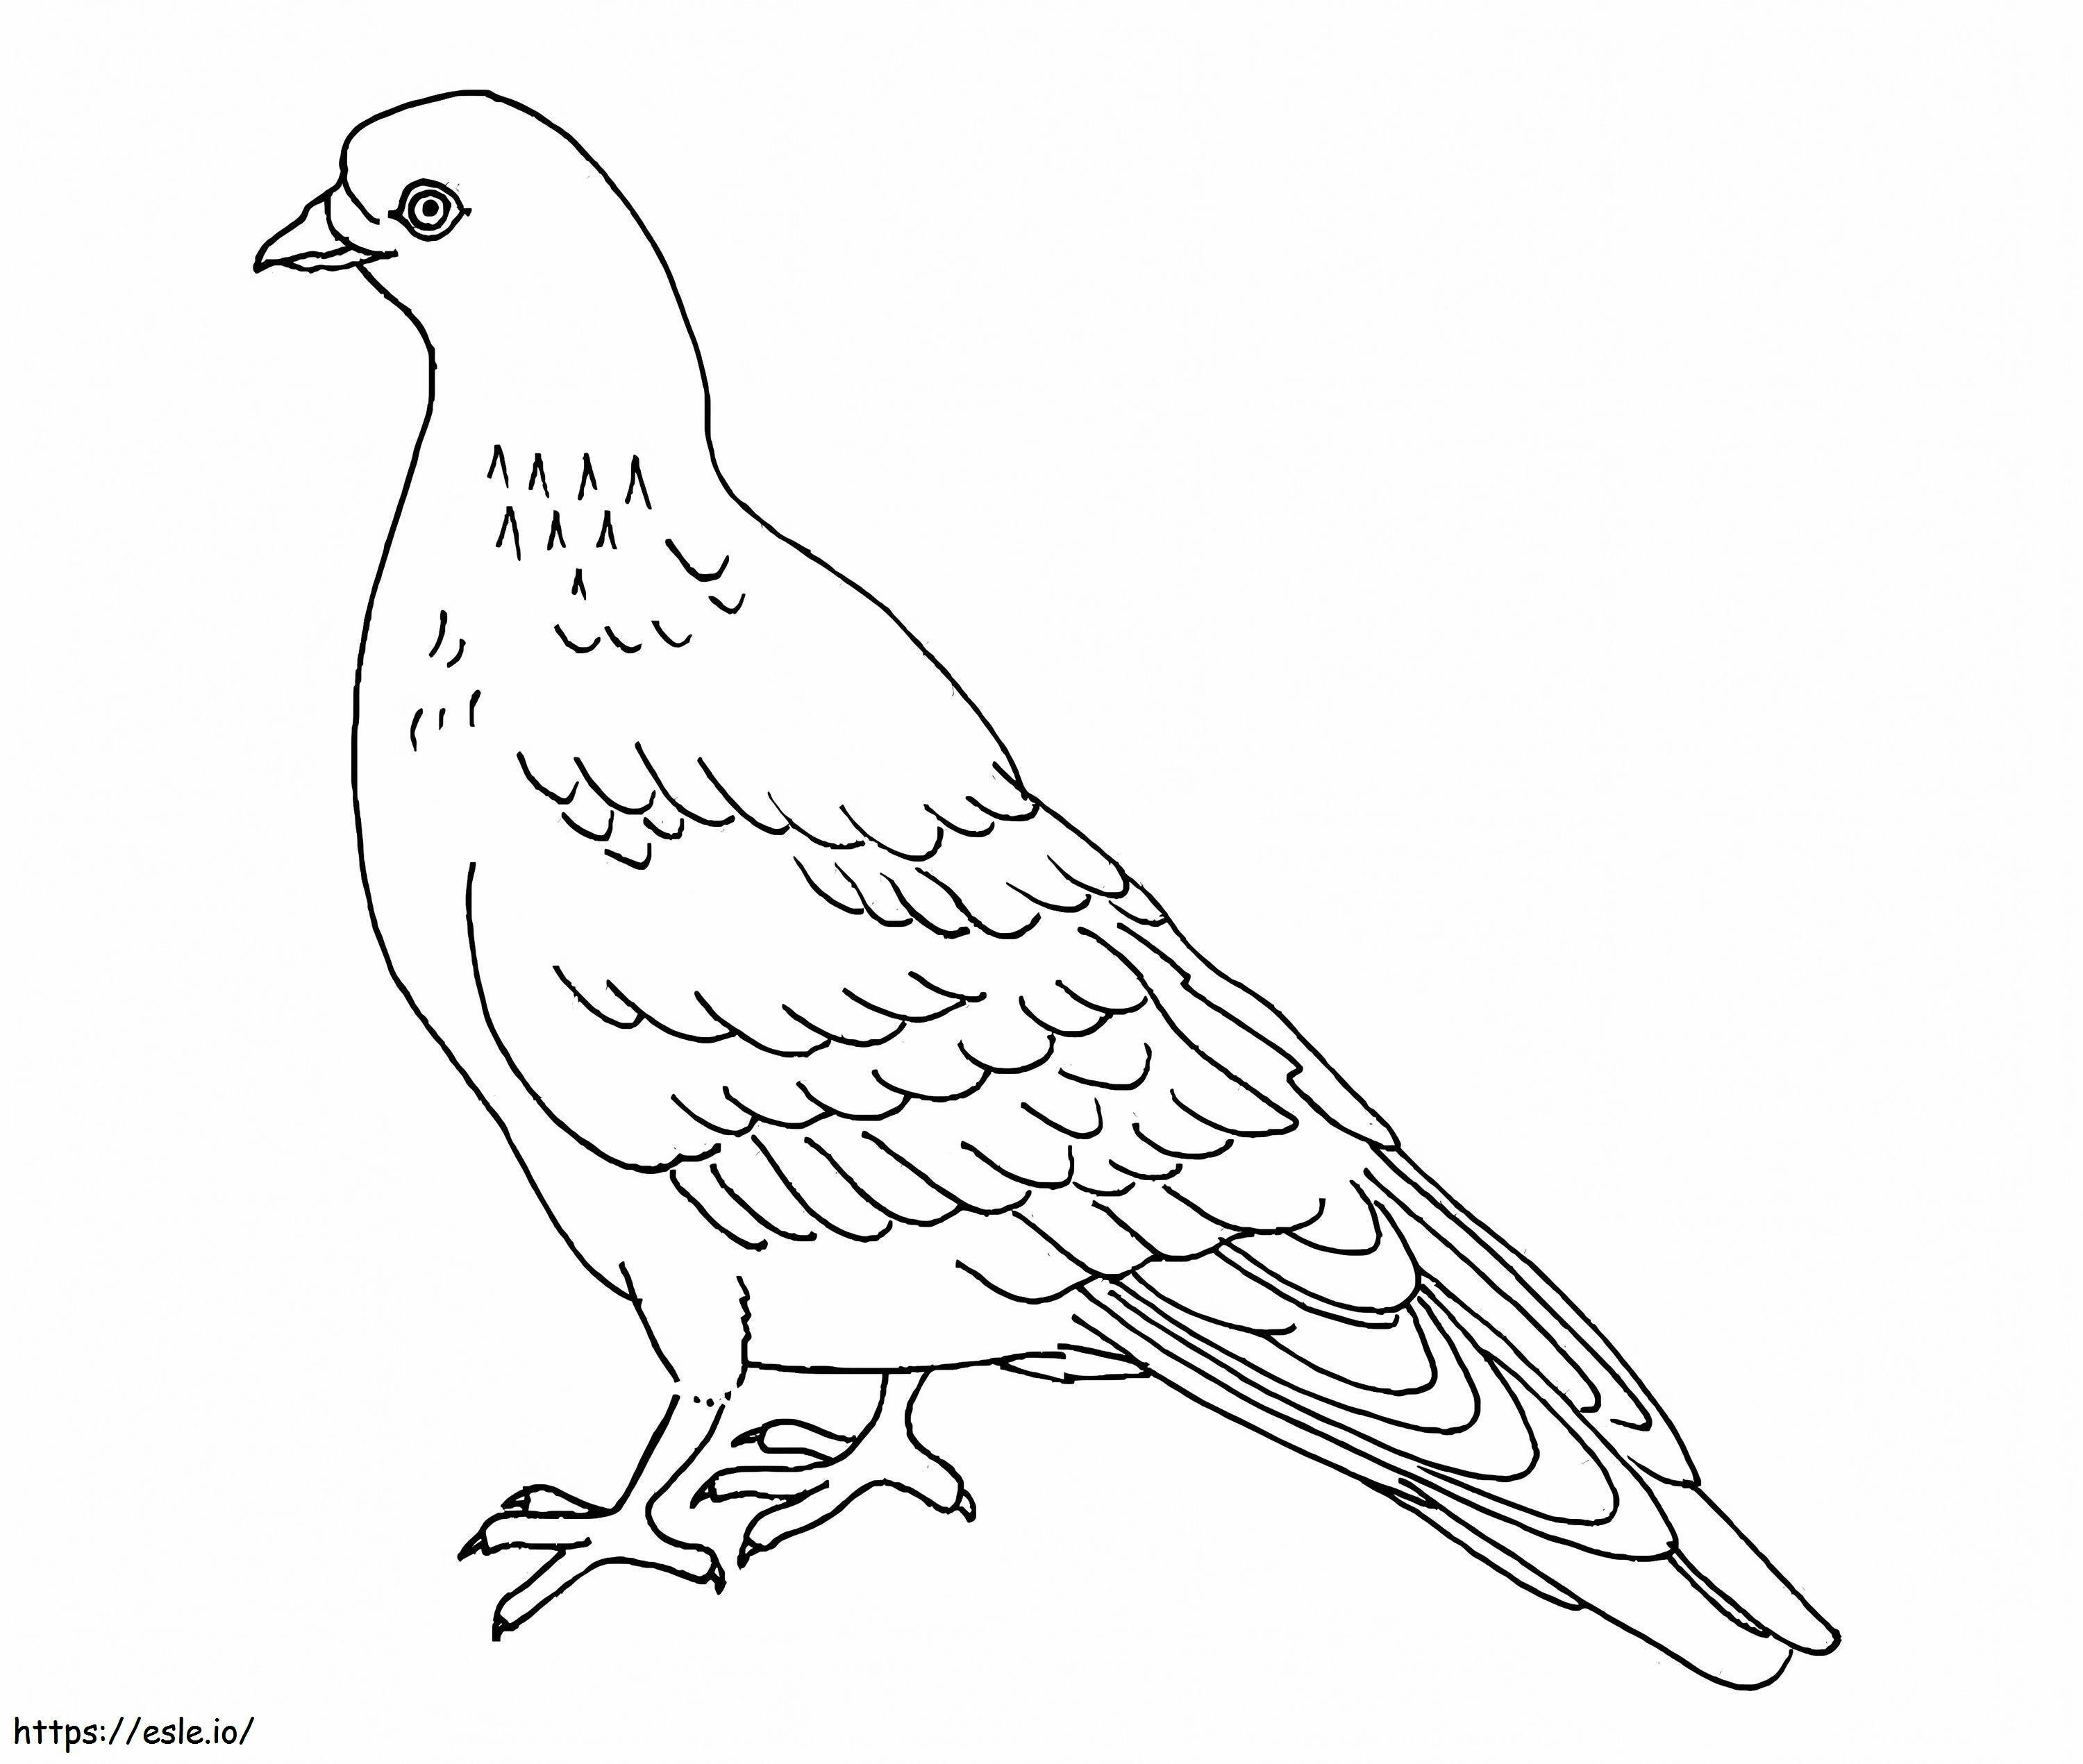 Coloriage Pigeon 2 à imprimer dessin